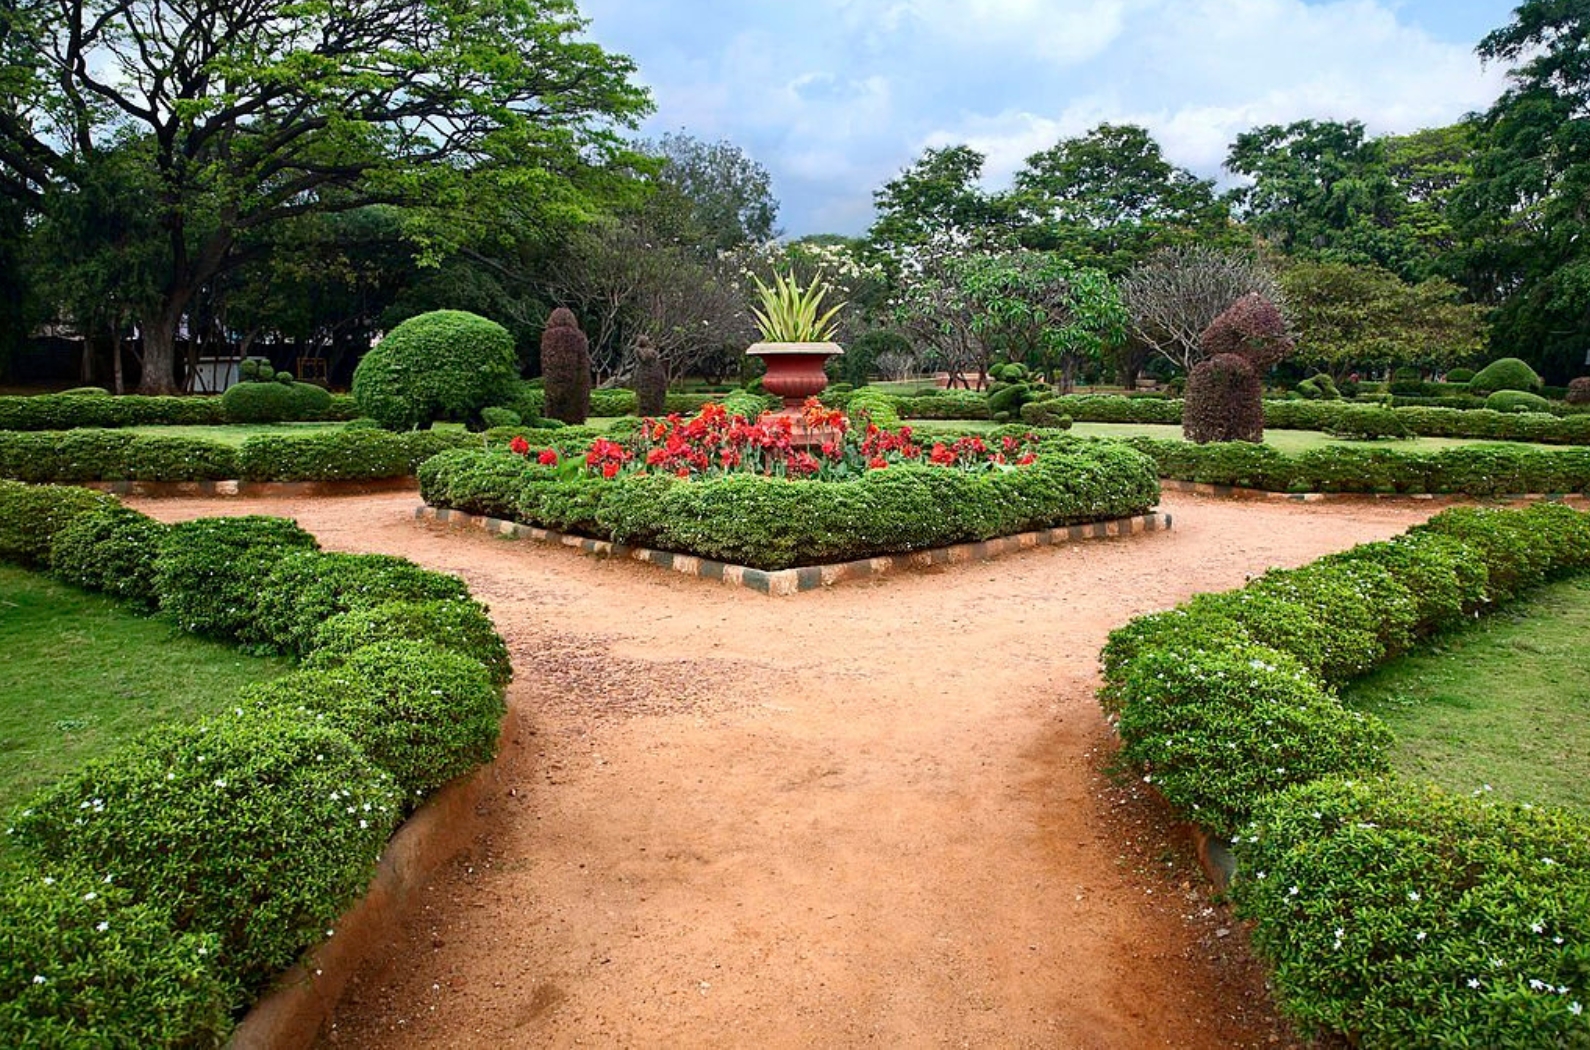 Beautiful view of Lalbagh botanical garden in Bangalore, Karnataka, India.